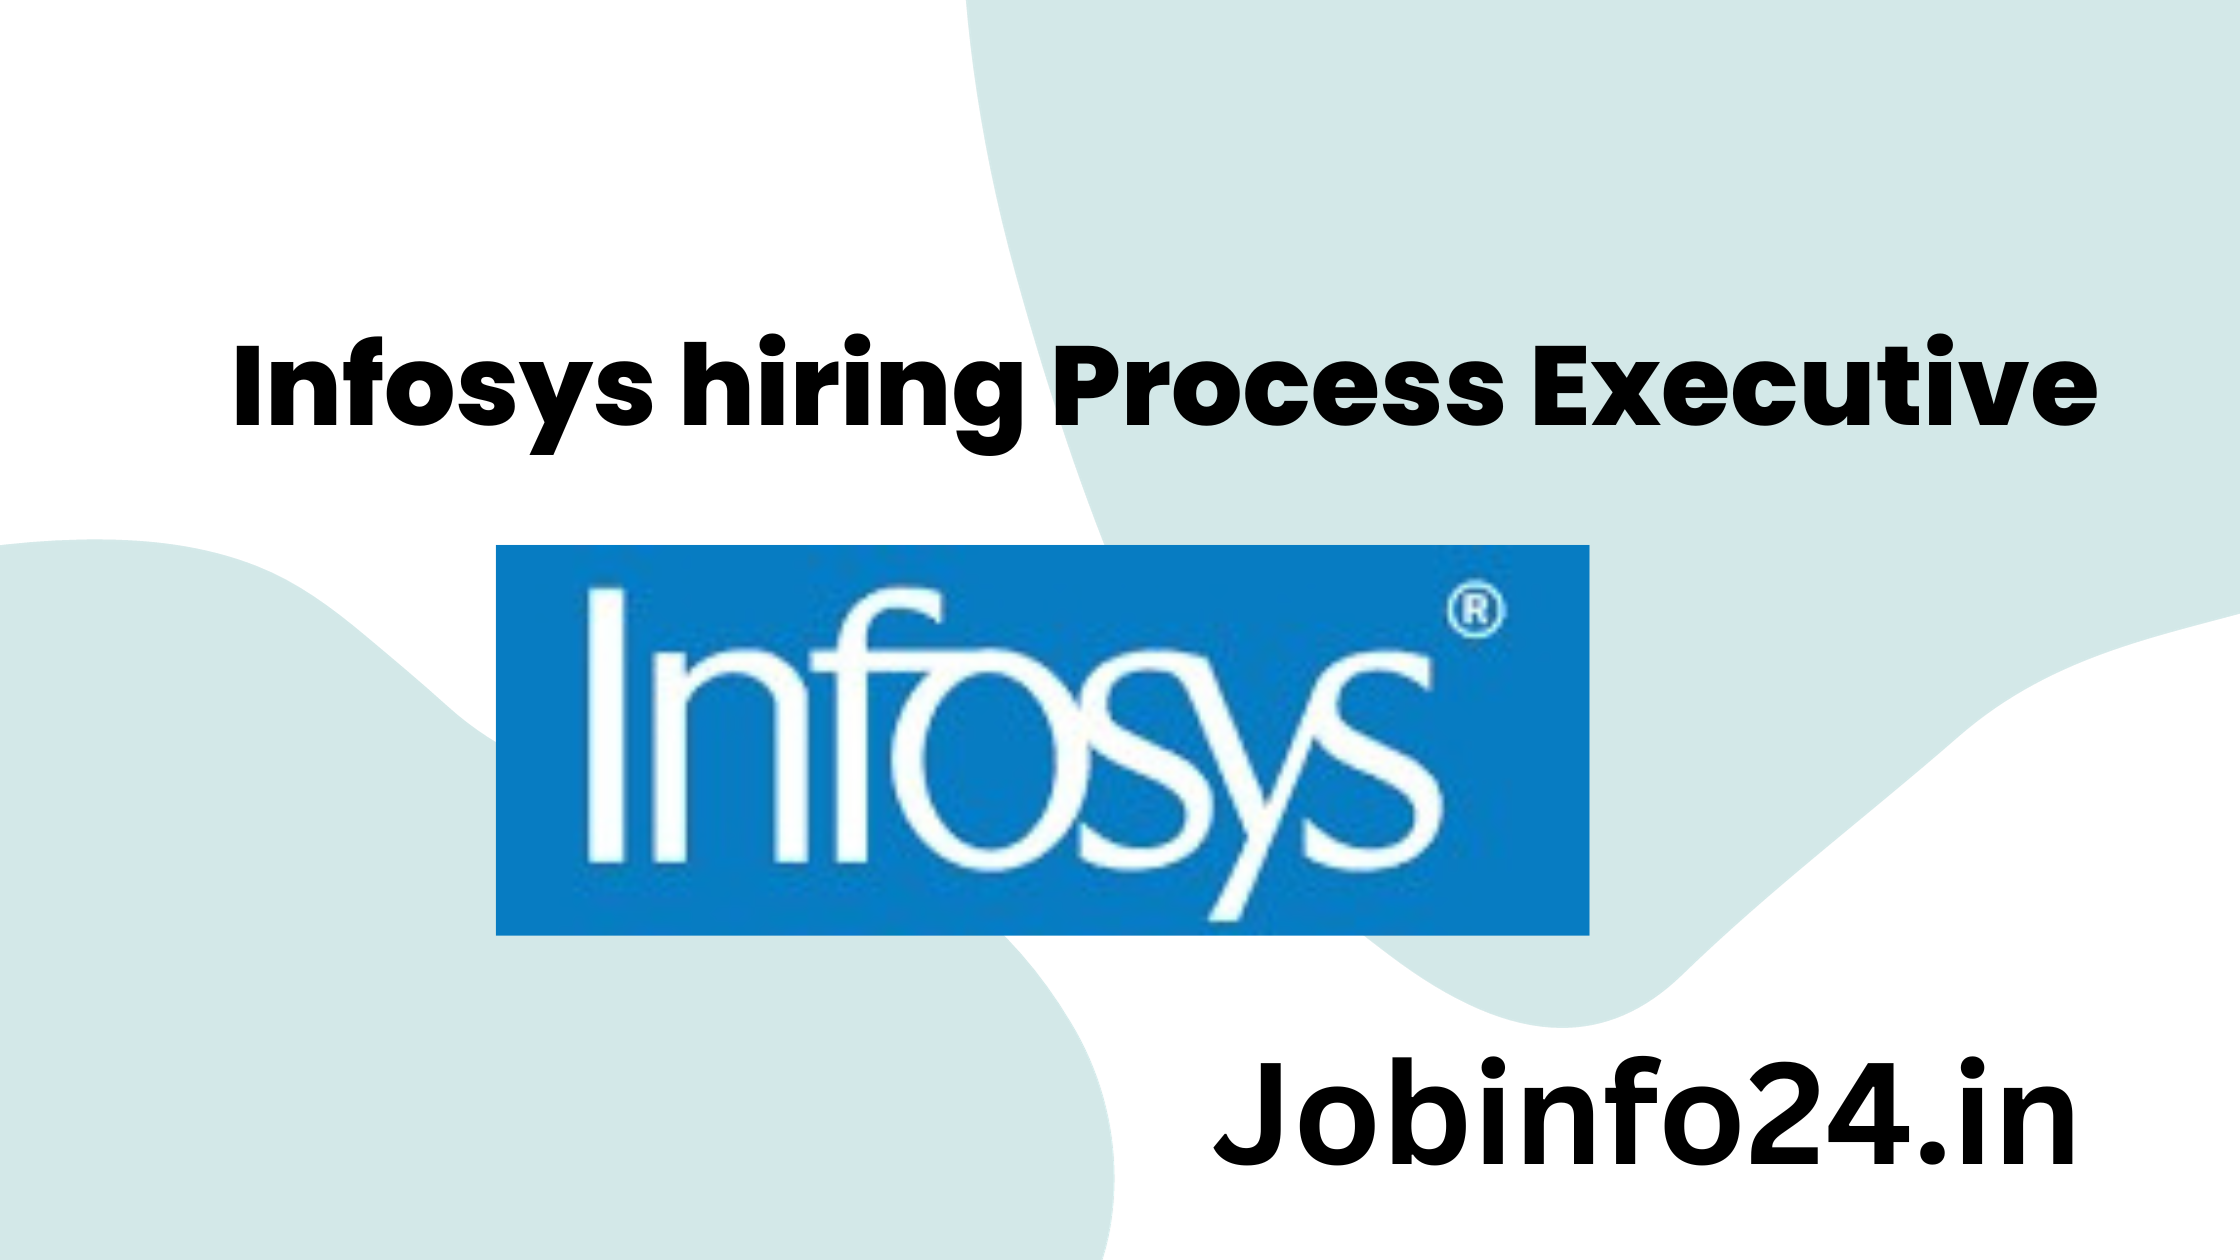 Infosys hiring Process Executive